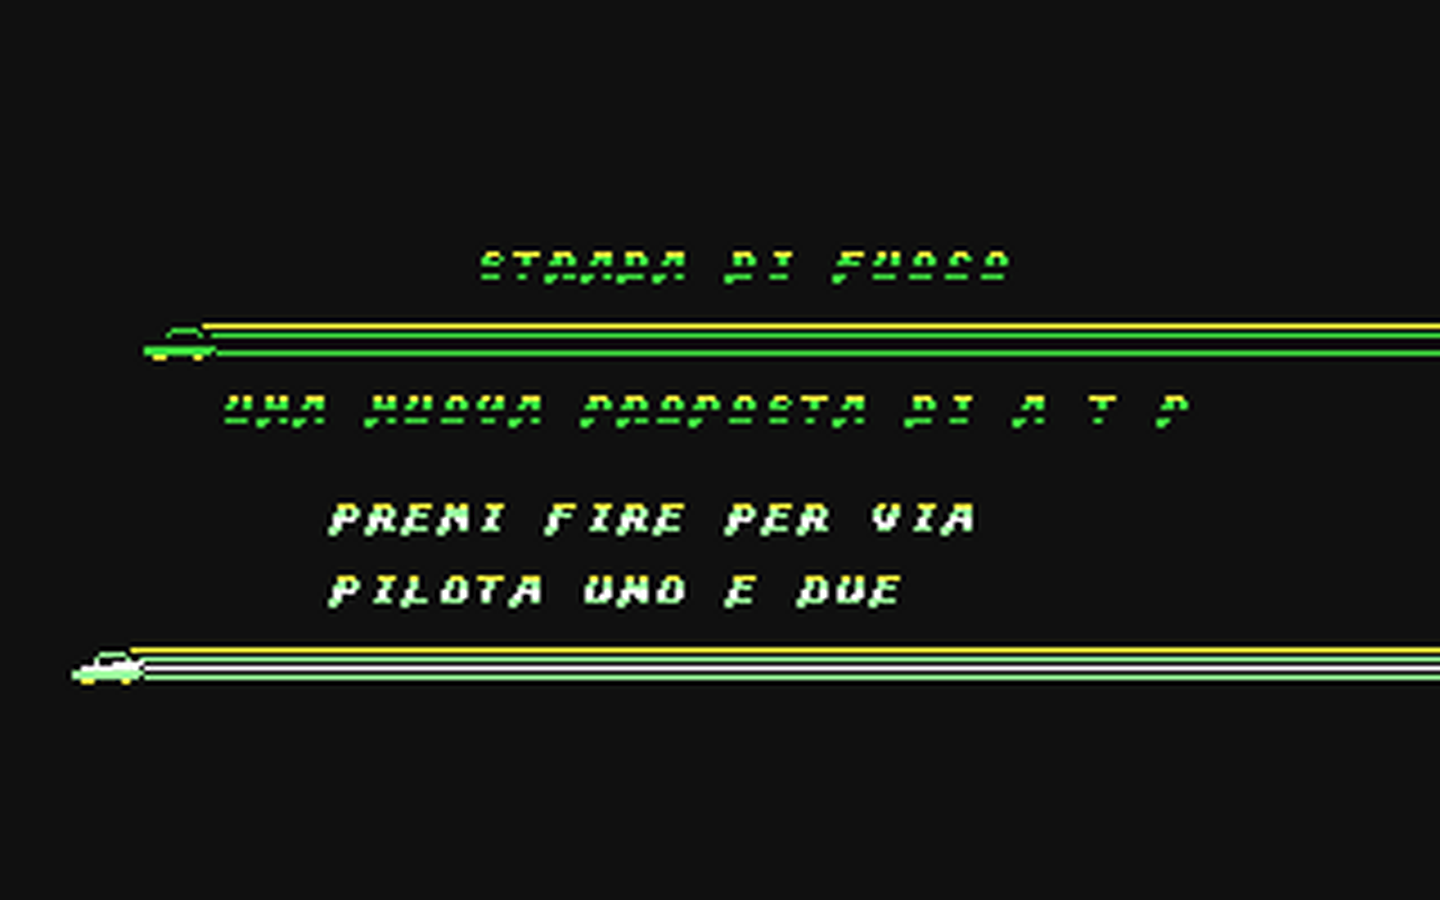 C64 GameBase Strada_di_Fuoco Edigamma_S.r.l./Super_Game_2000_Nuova_Serie 1988